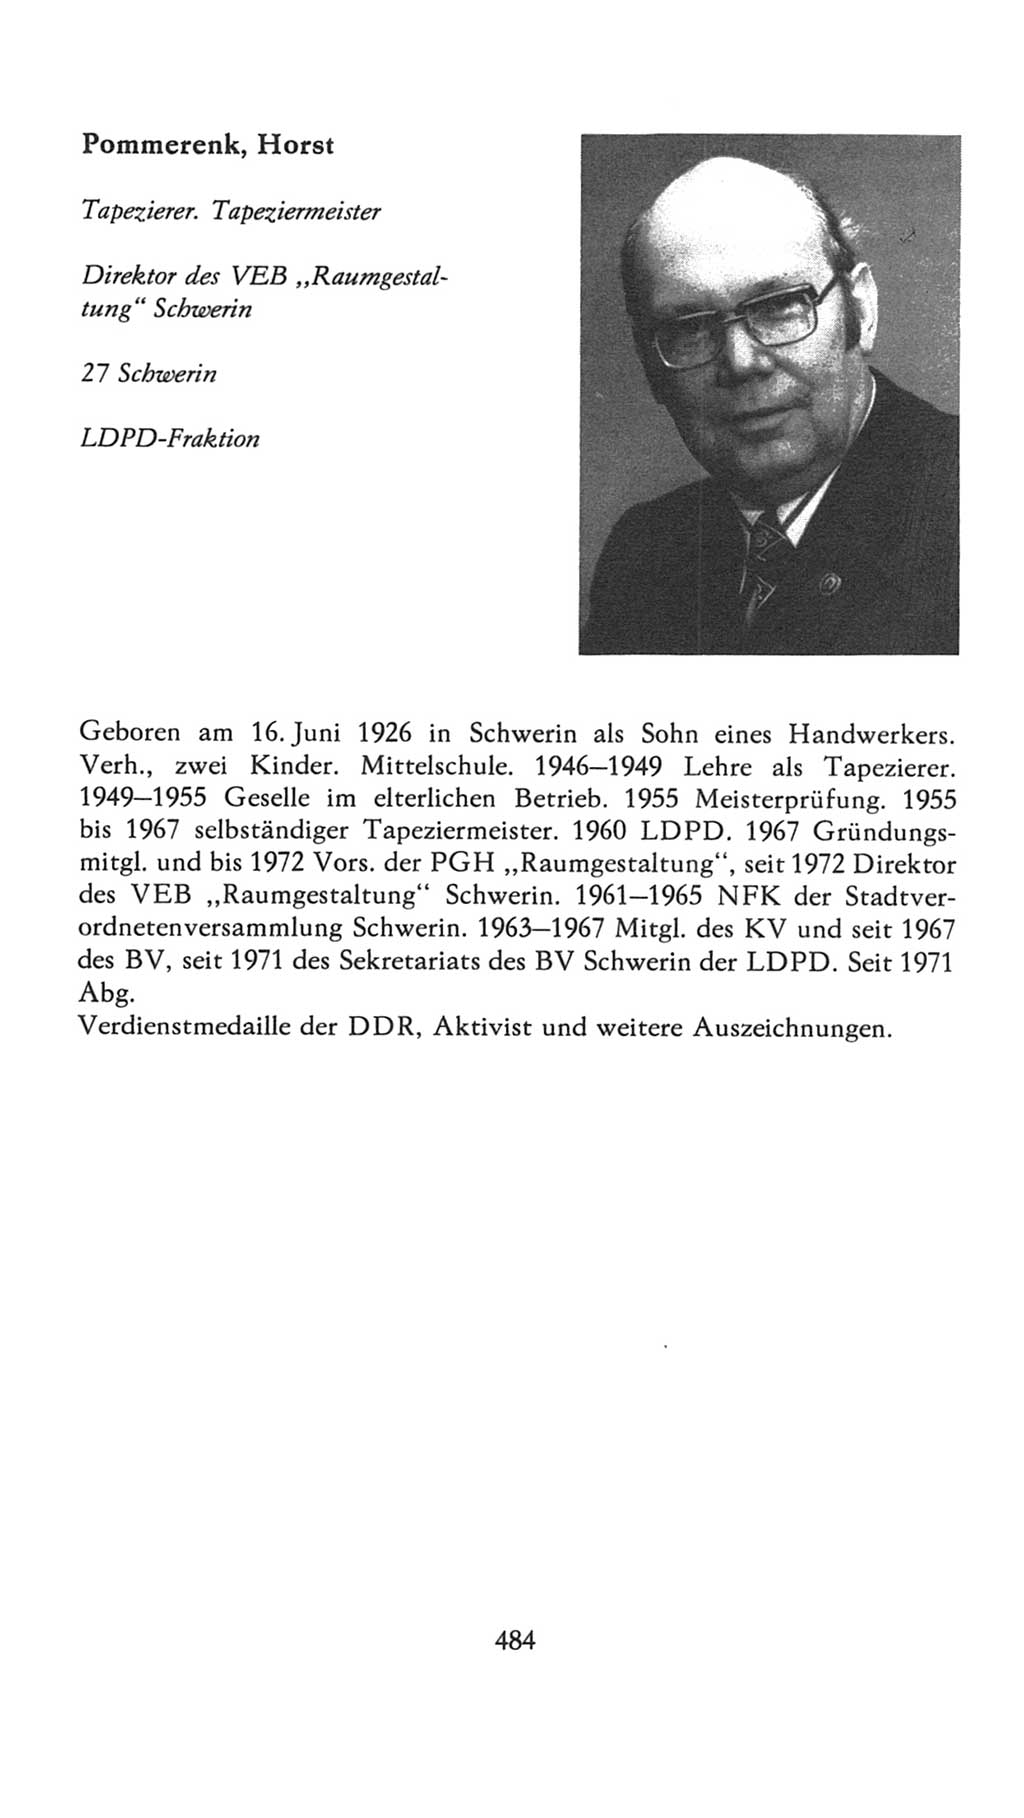 Volkskammer (VK) der Deutschen Demokratischen Republik (DDR), 7. Wahlperiode 1976-1981, Seite 484 (VK. DDR 7. WP. 1976-1981, S. 484)